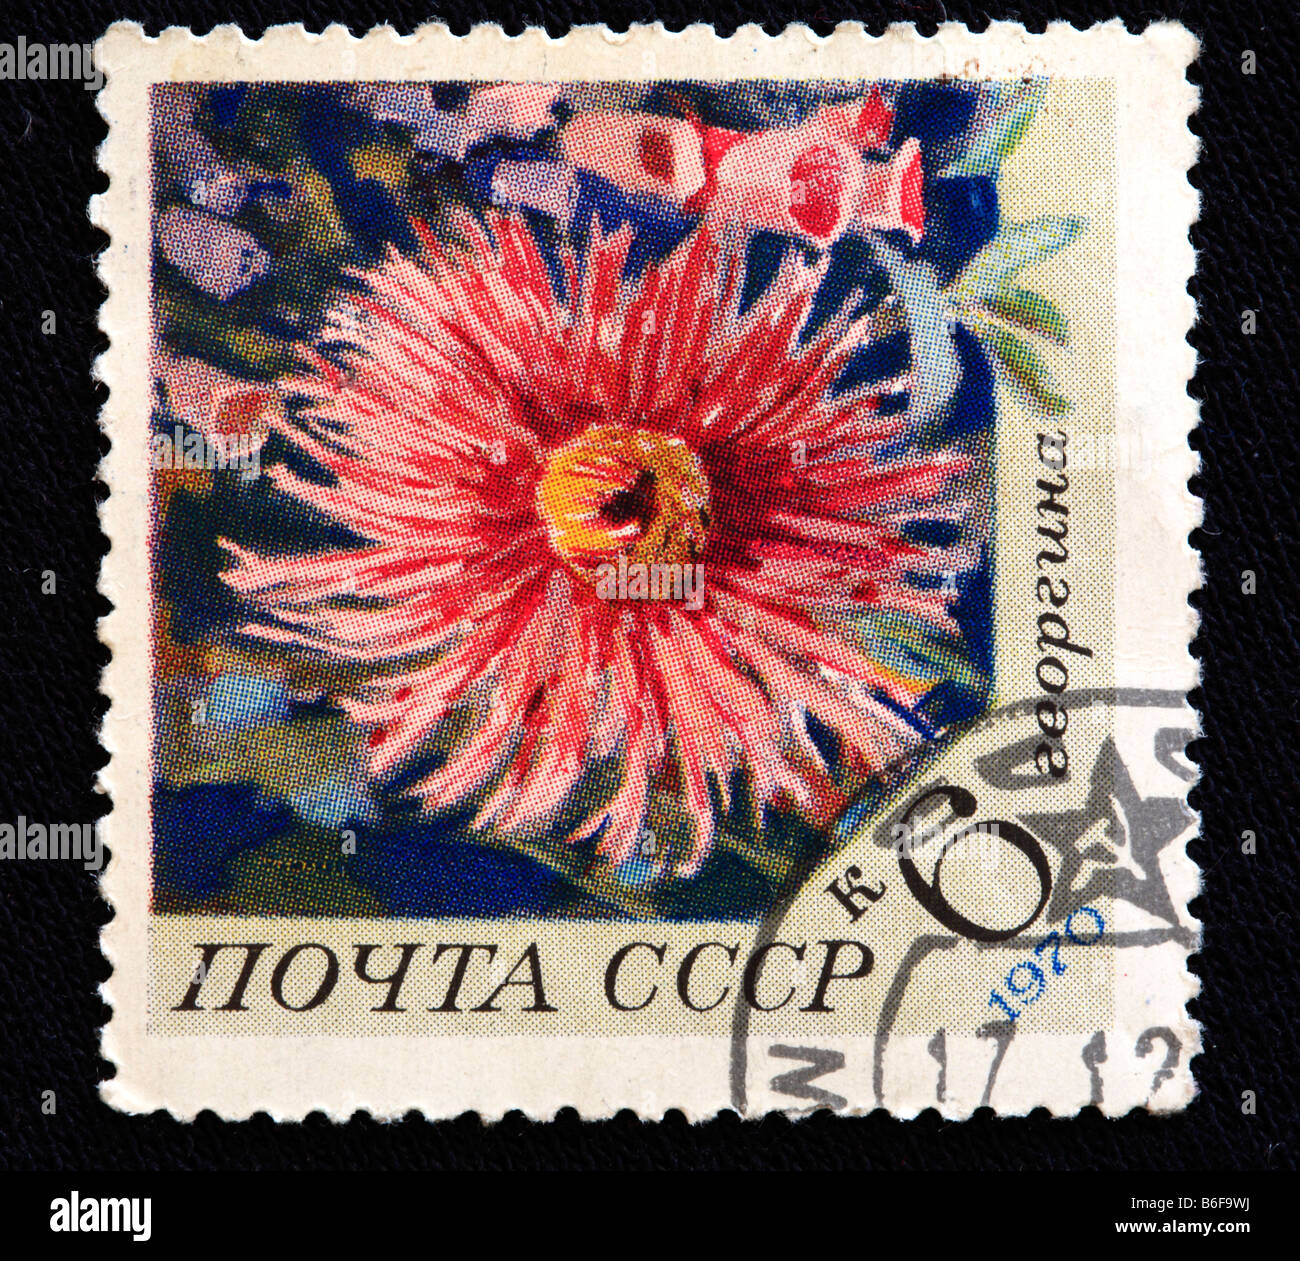 Le dahlia (Dahlia variabilis), timbre-poste, URSS, 1970 Banque D'Images